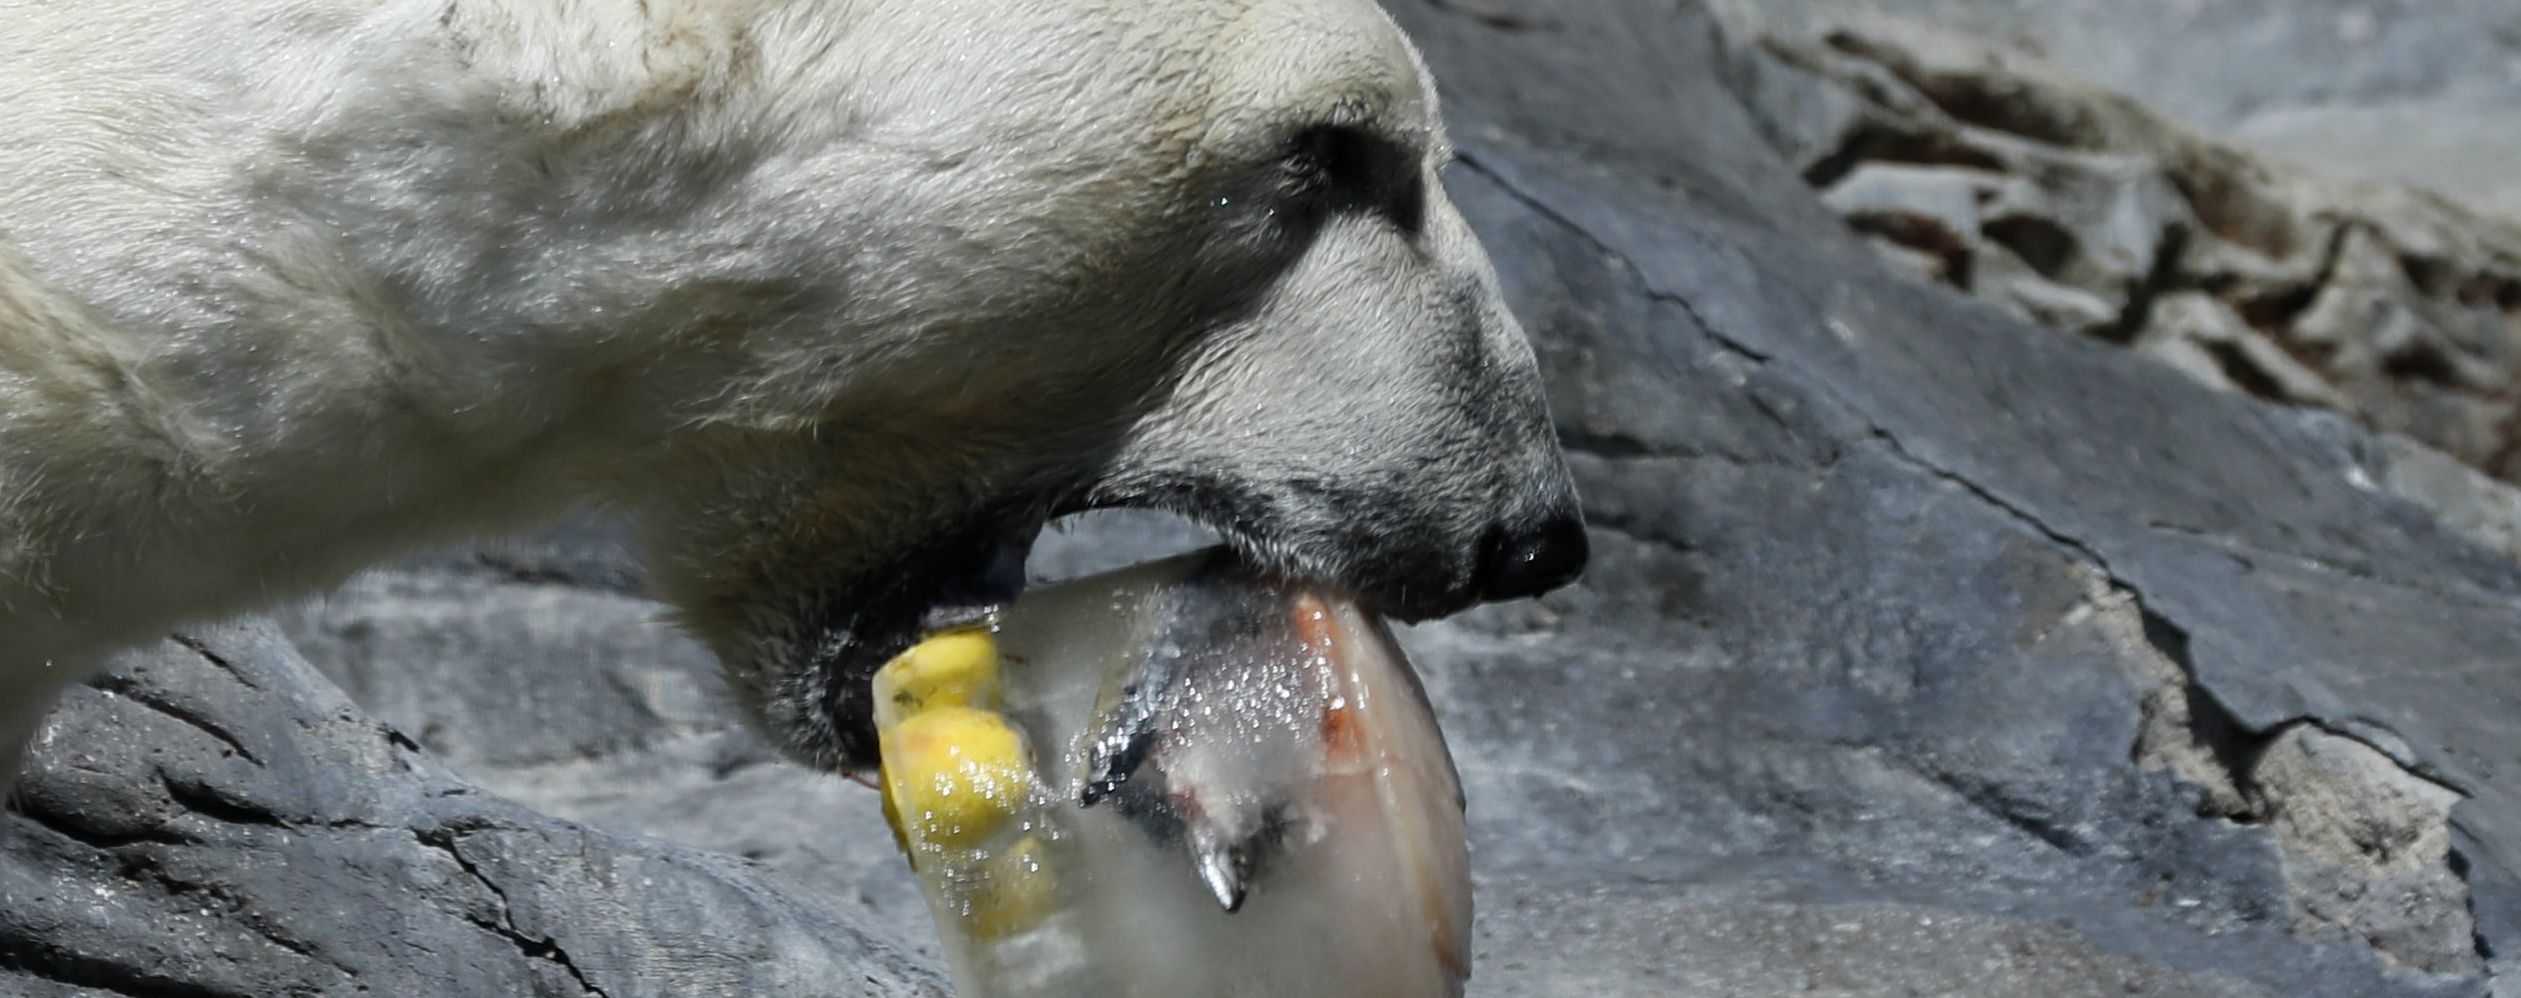 Підкрався непомітно: у московському зоопарку жінка зупинила ведмедя віником